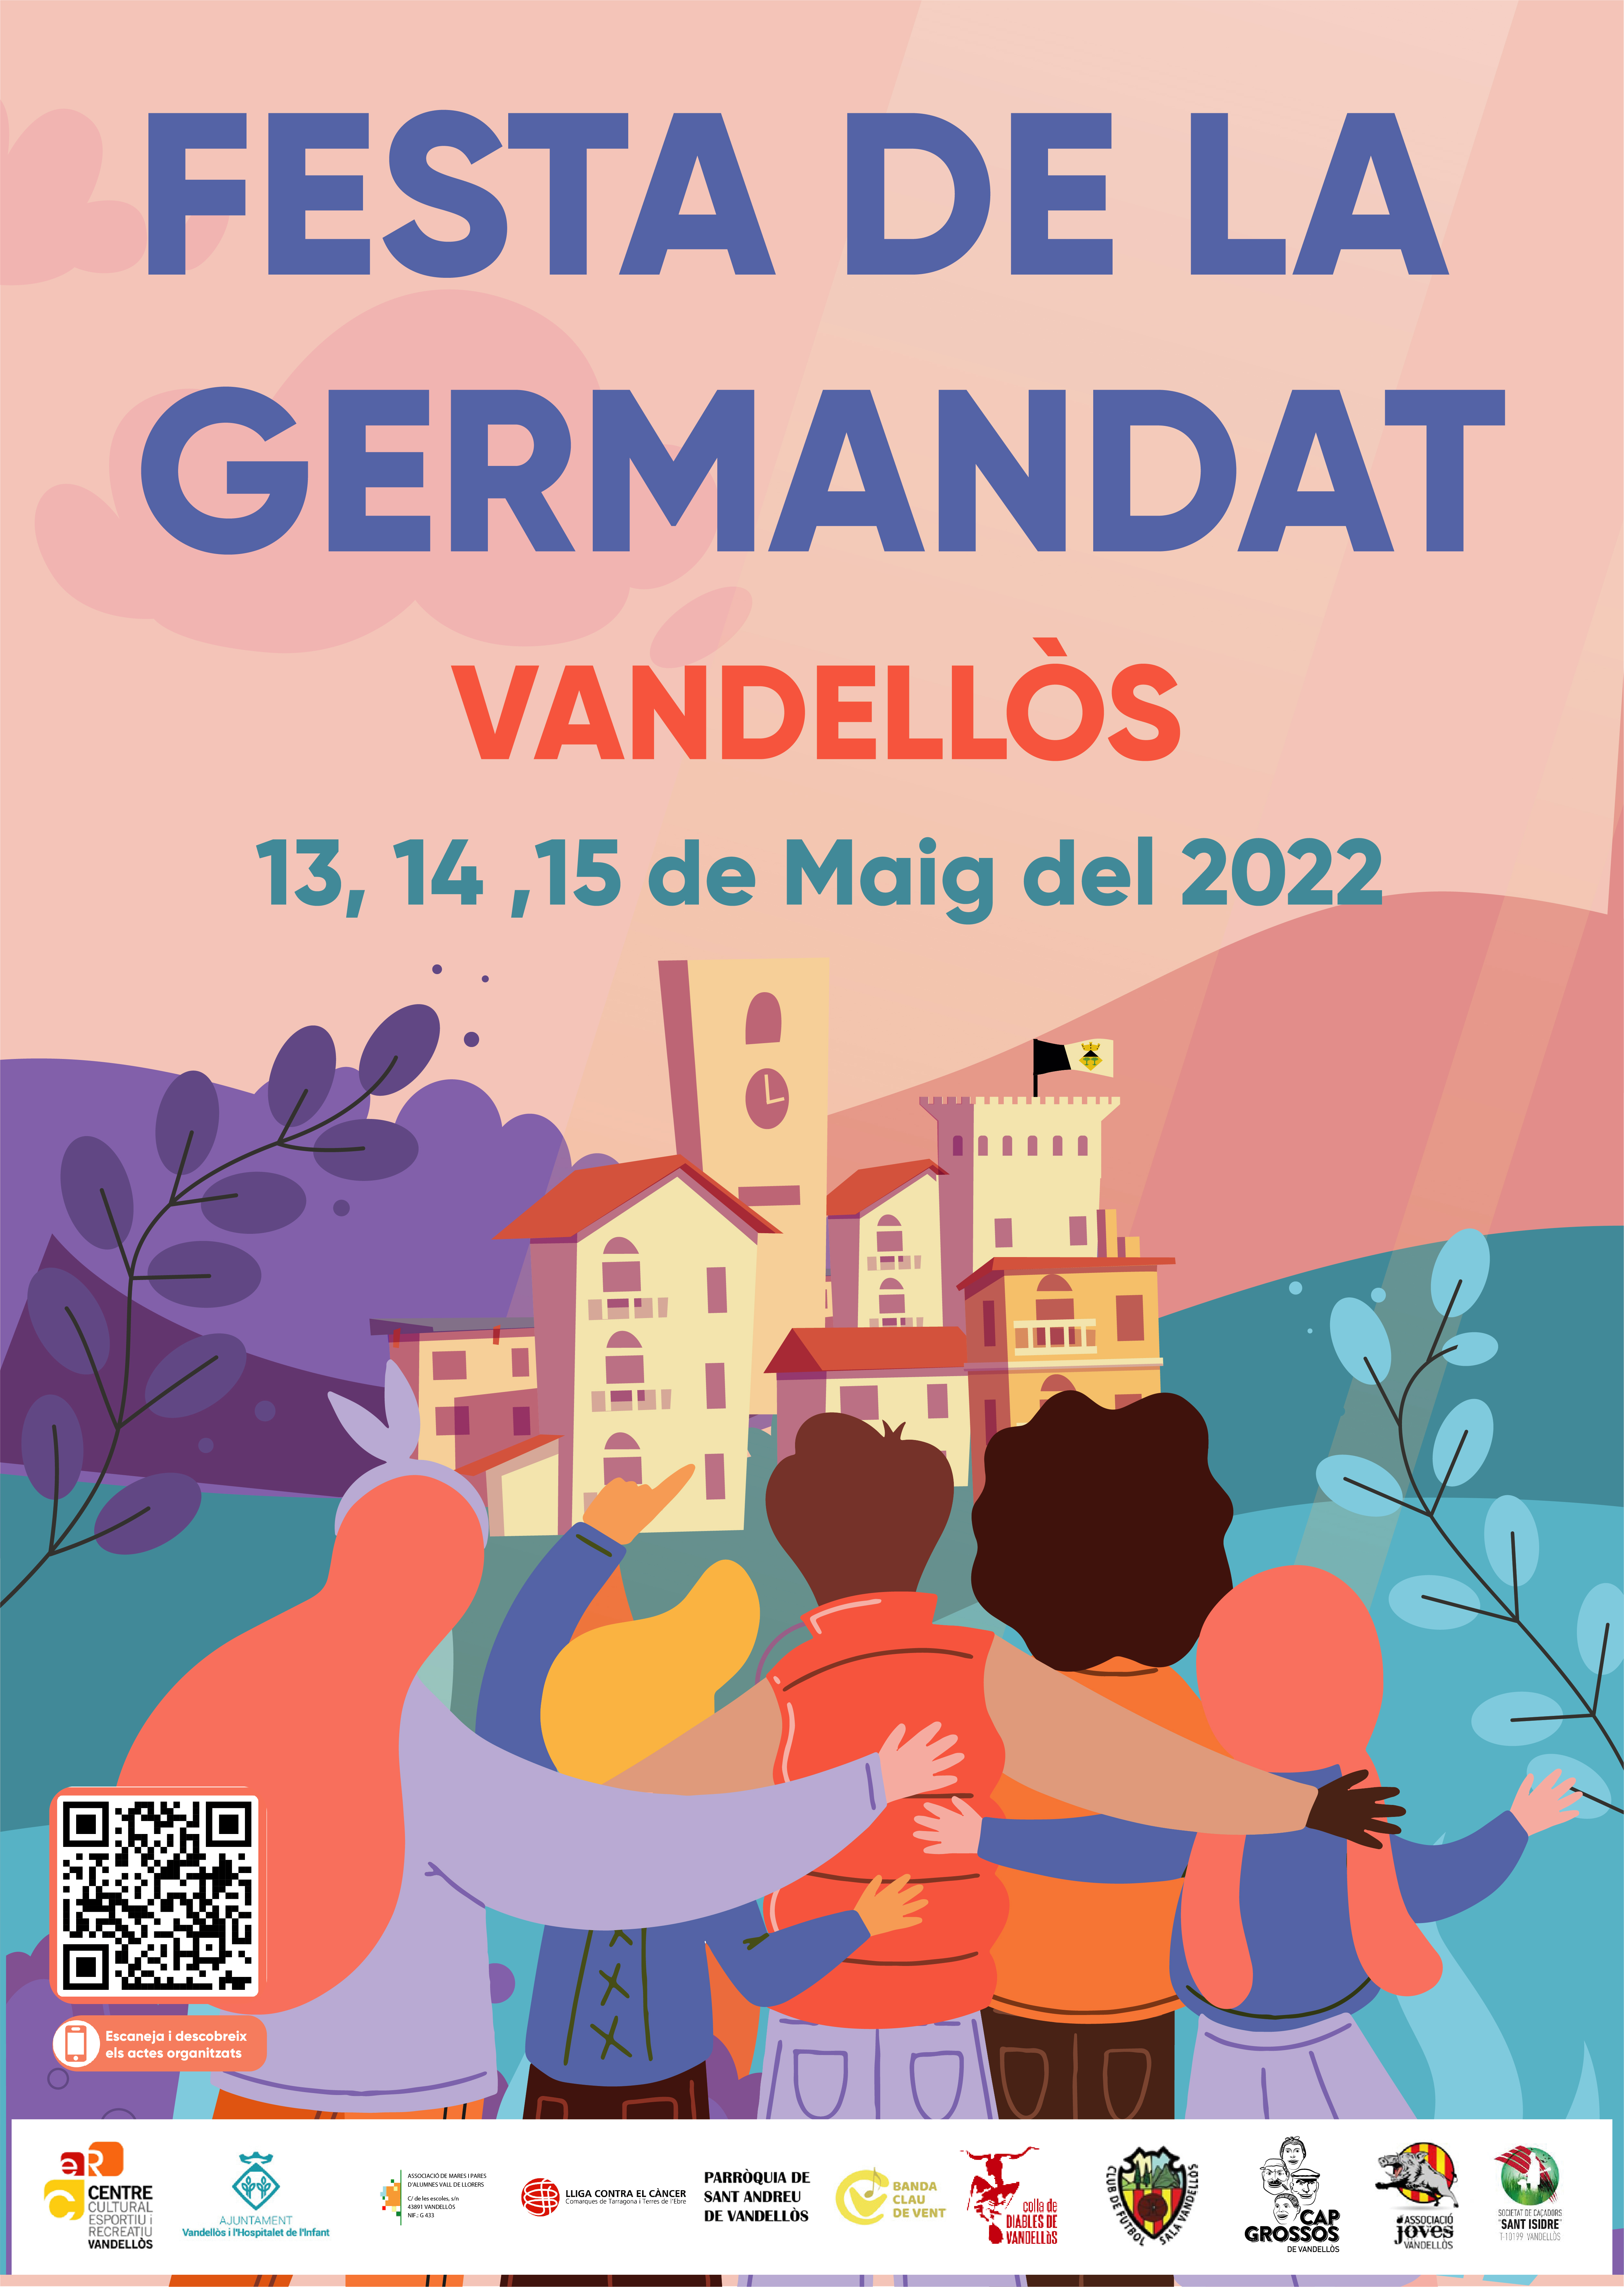 Més d’una vintena d’actes, per celebrar la Festa de la Germandat de Vandellòs del 13 al 15 de maig